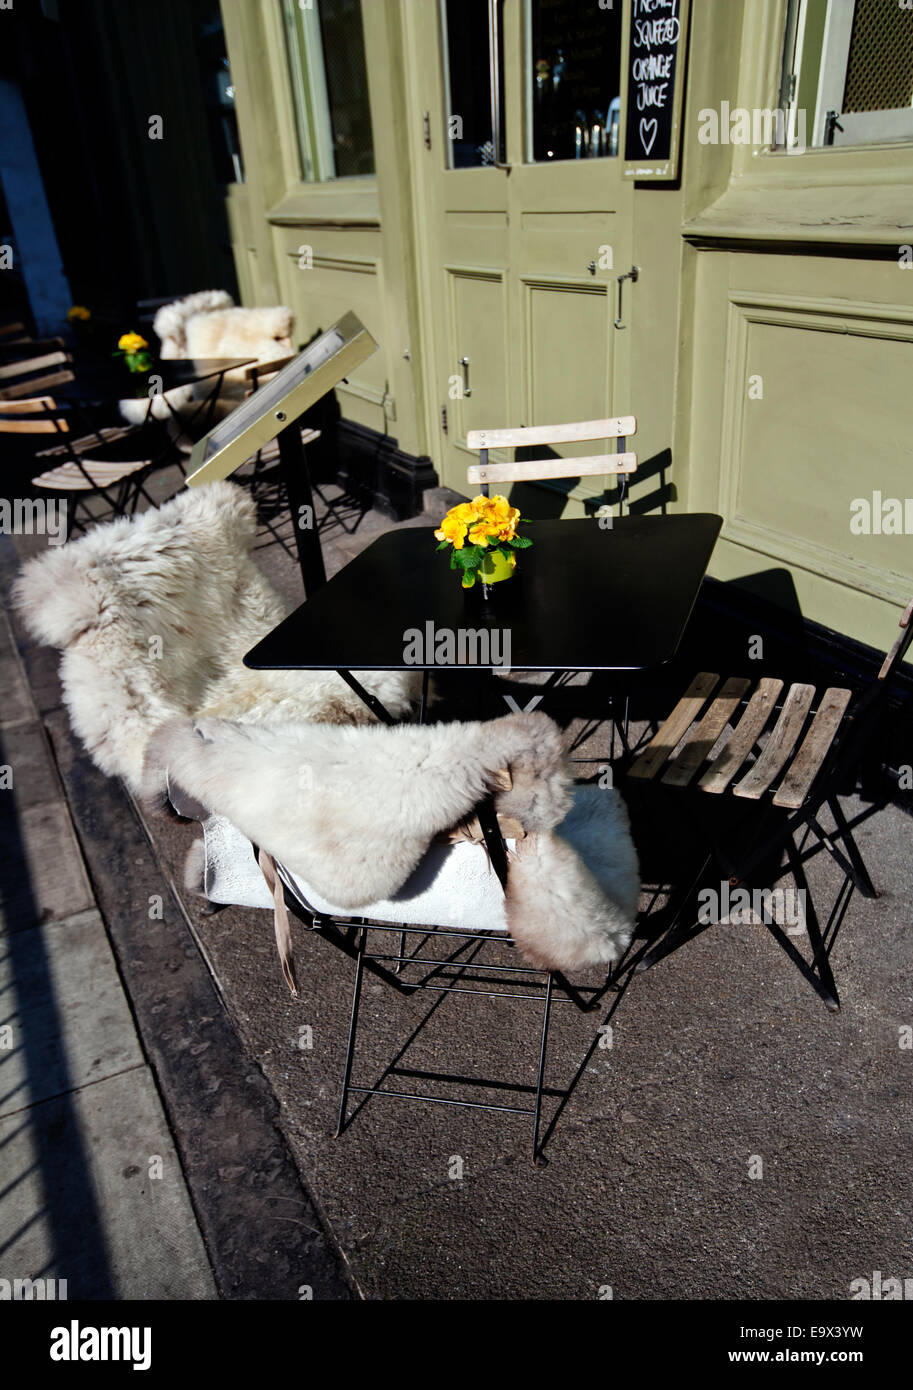 Housses de siège en peau de mouton pour siège en dehors de pub, Marylebone, London, England, UK Banque D'Images